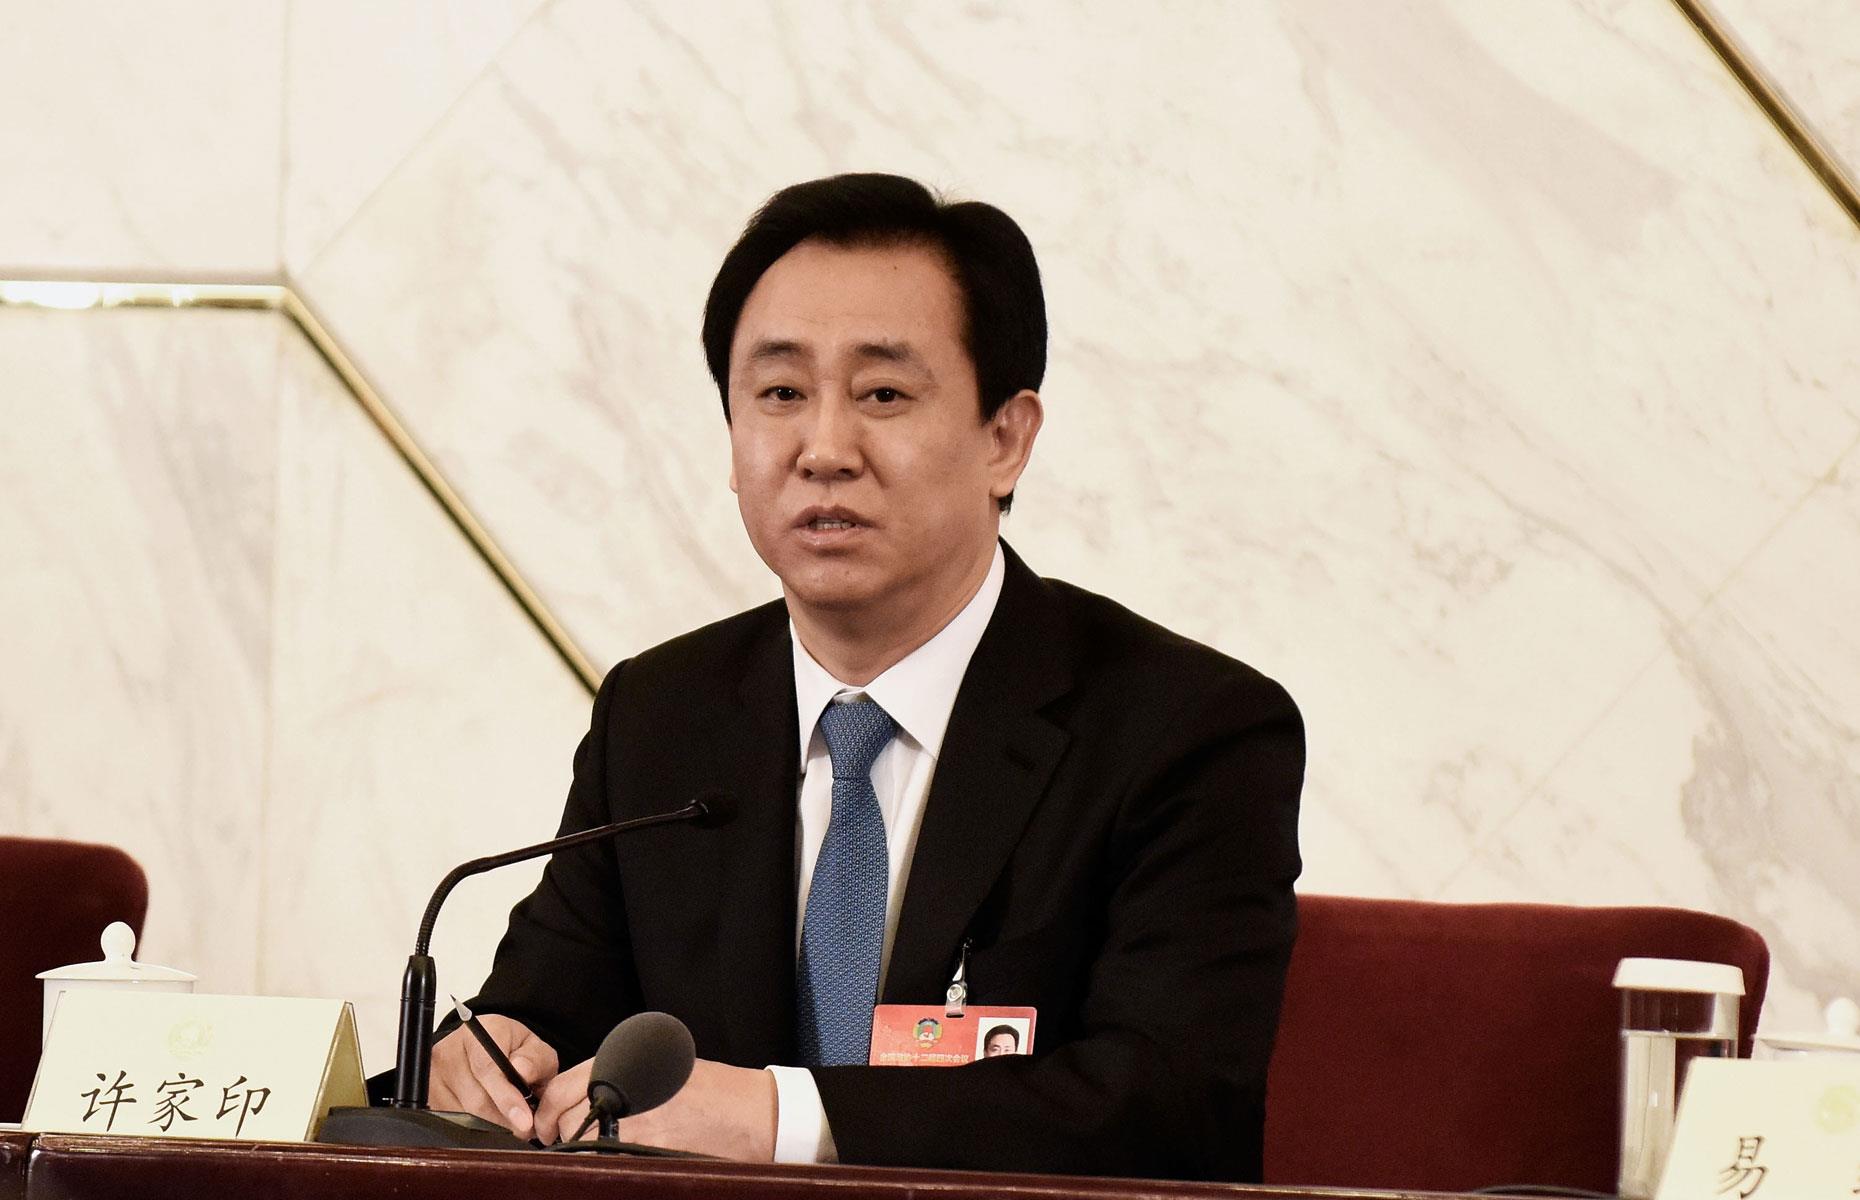 60 – Xu Jiayin, net worth: $33 billion (£26.4bn) 